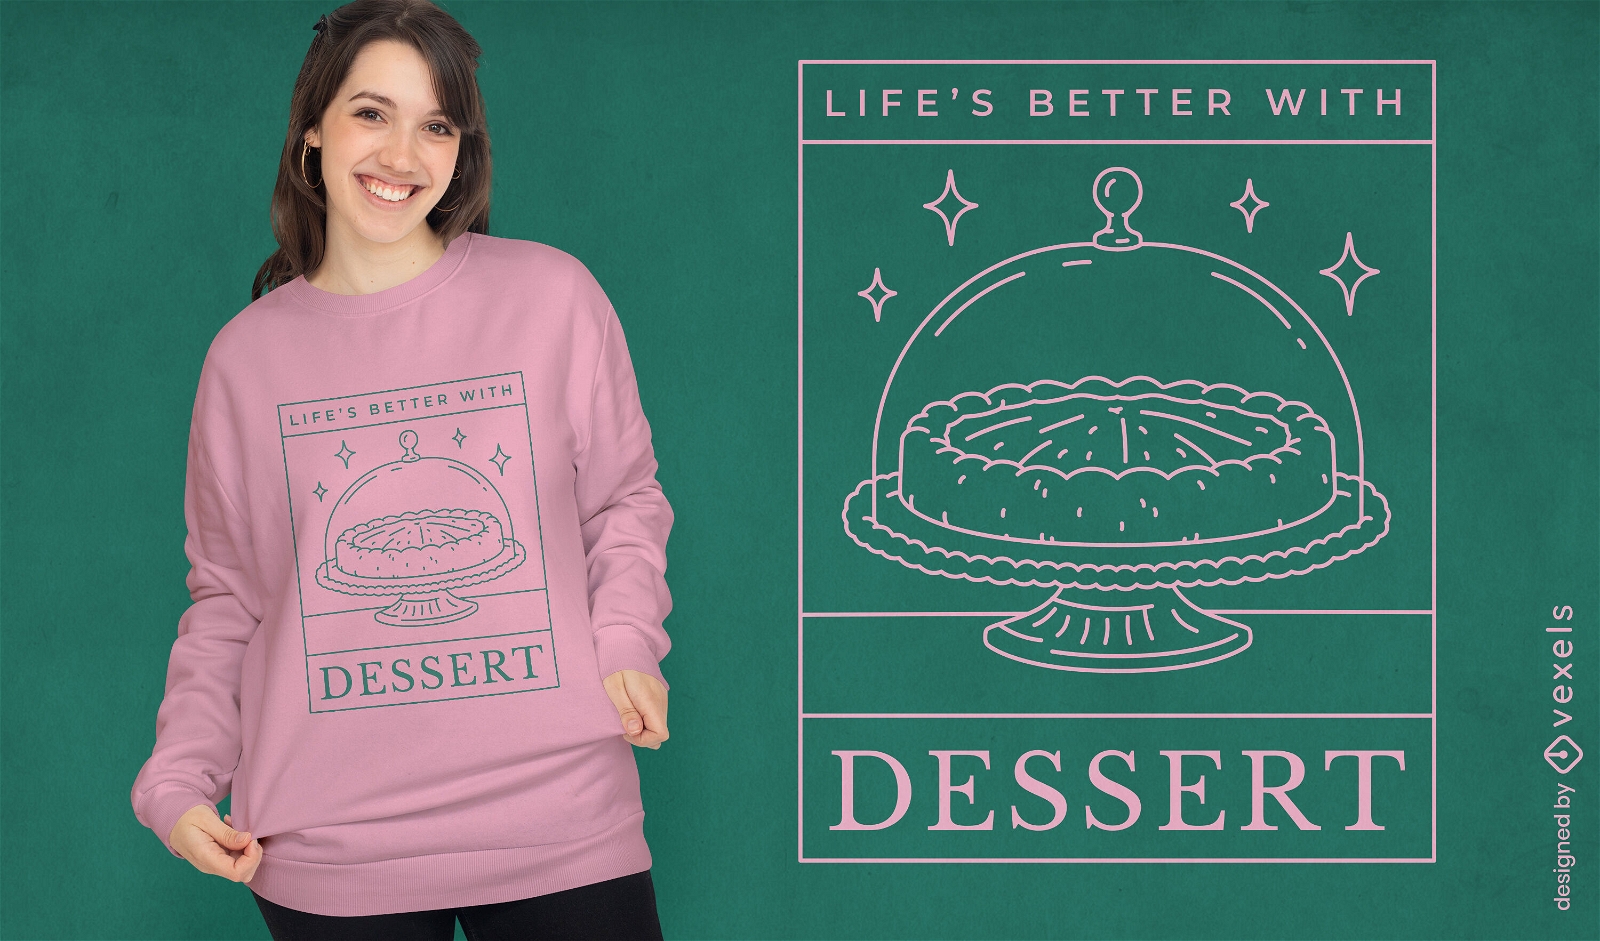 Life's better with dessert t-shirt design